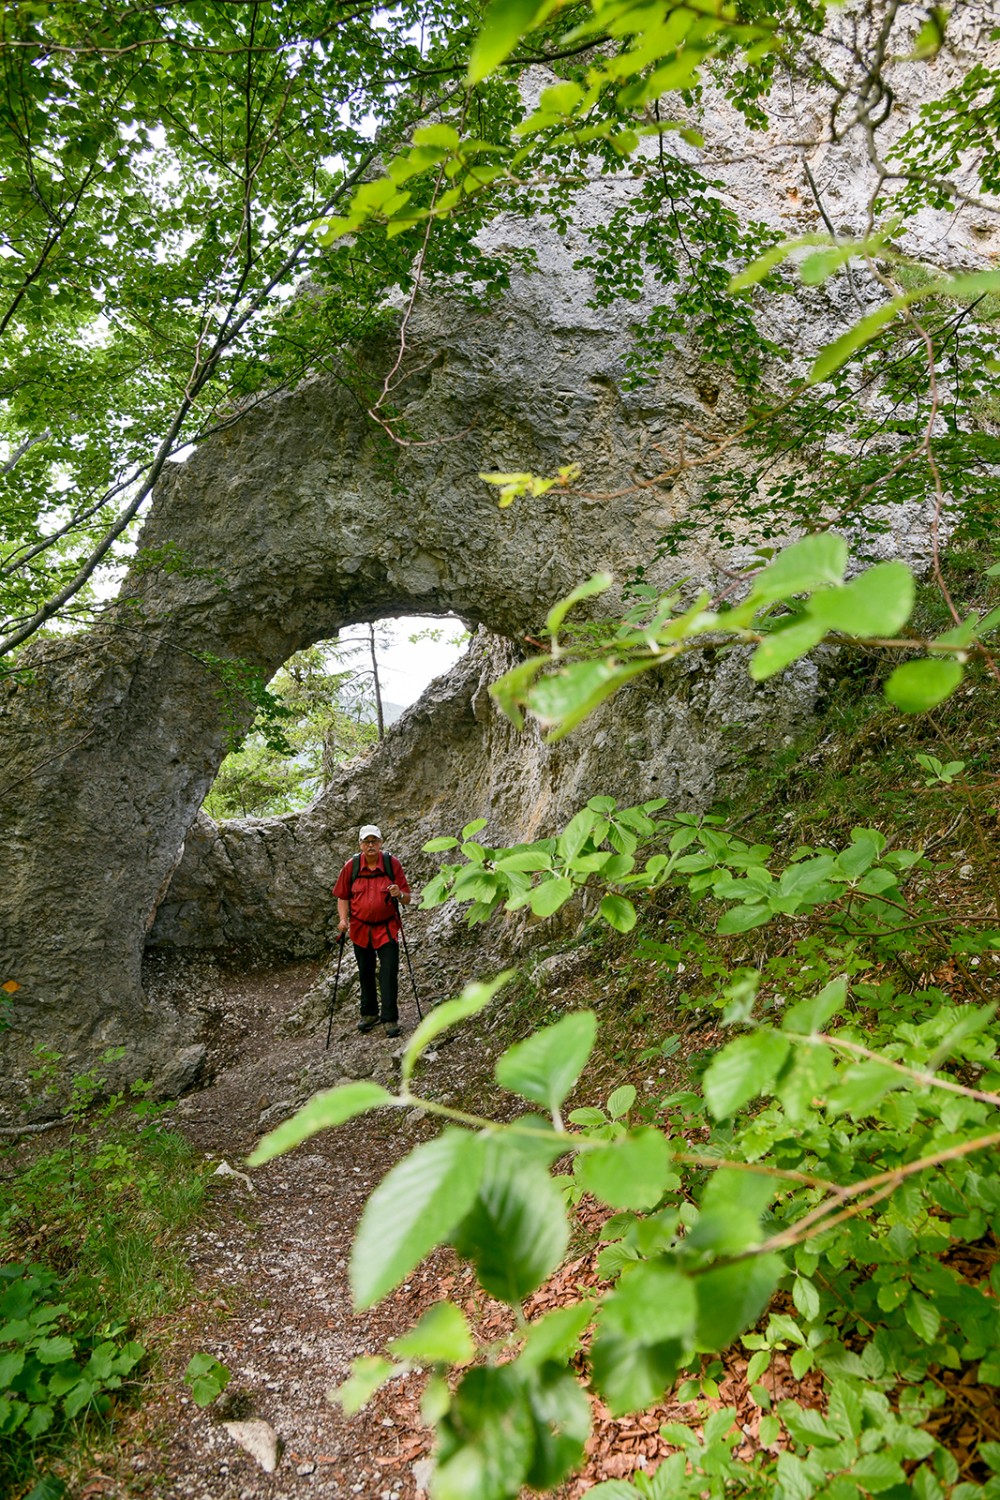 La descente vers le site de Gerstelflue passe sous une arche rocheuse.